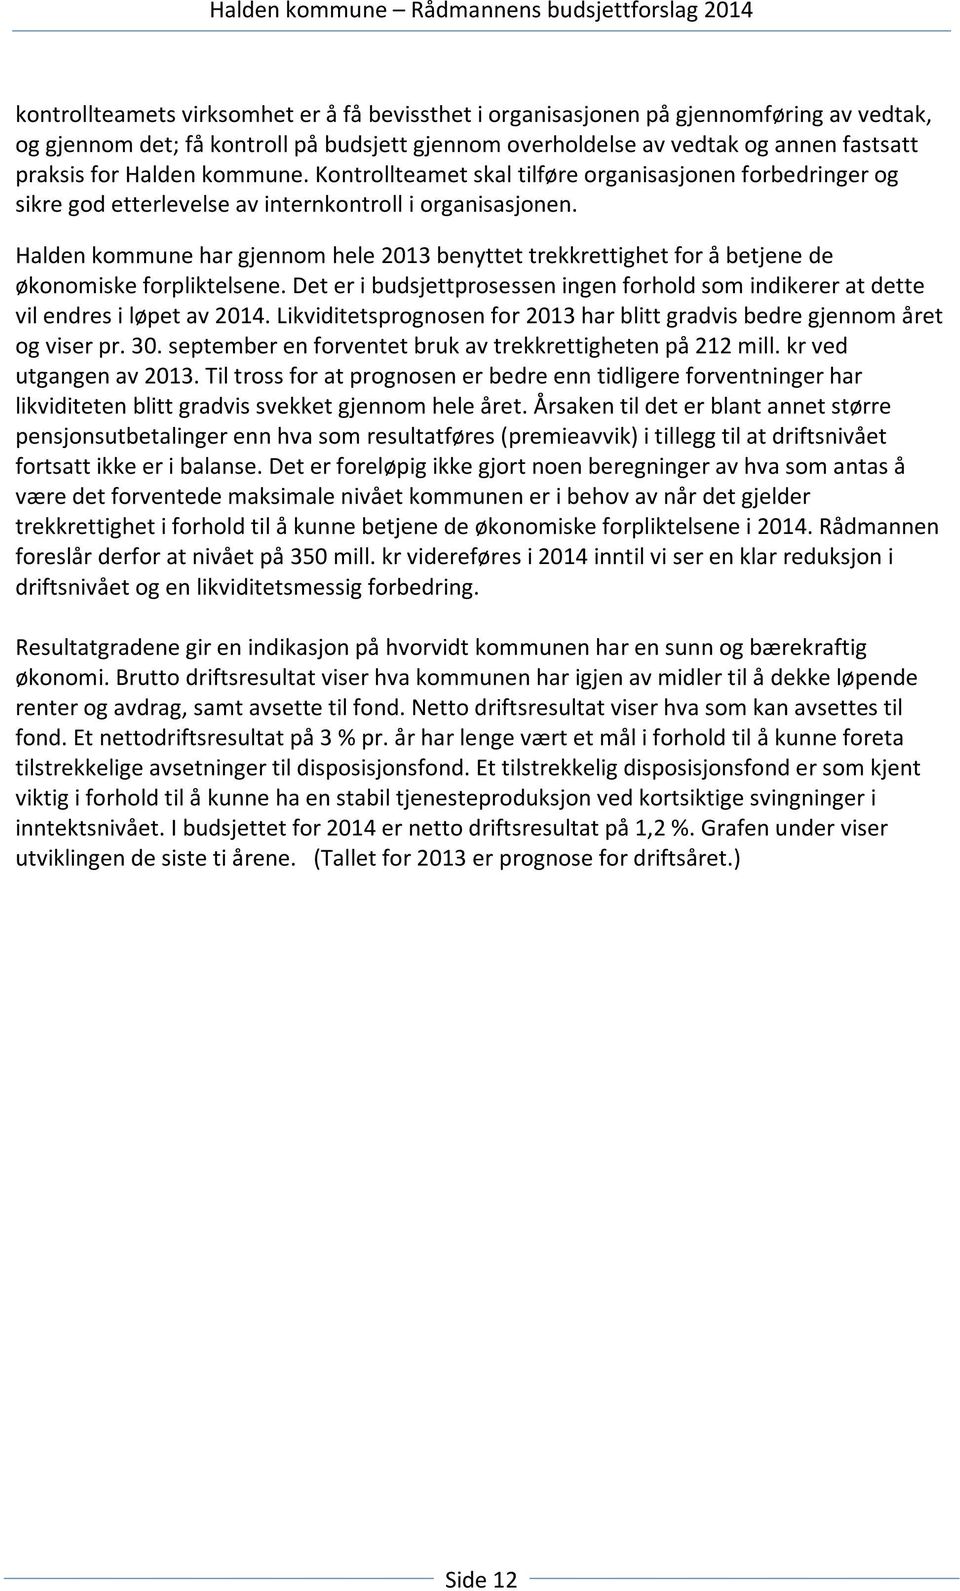 Halden kommune har gjennom hele 2013 benyttet trekkrettighet for å betjene de økonomiske forpliktelsene. Det er i budsjettprosessen ingen forhold som indikerer at dette vil endres i løpet av 2014.